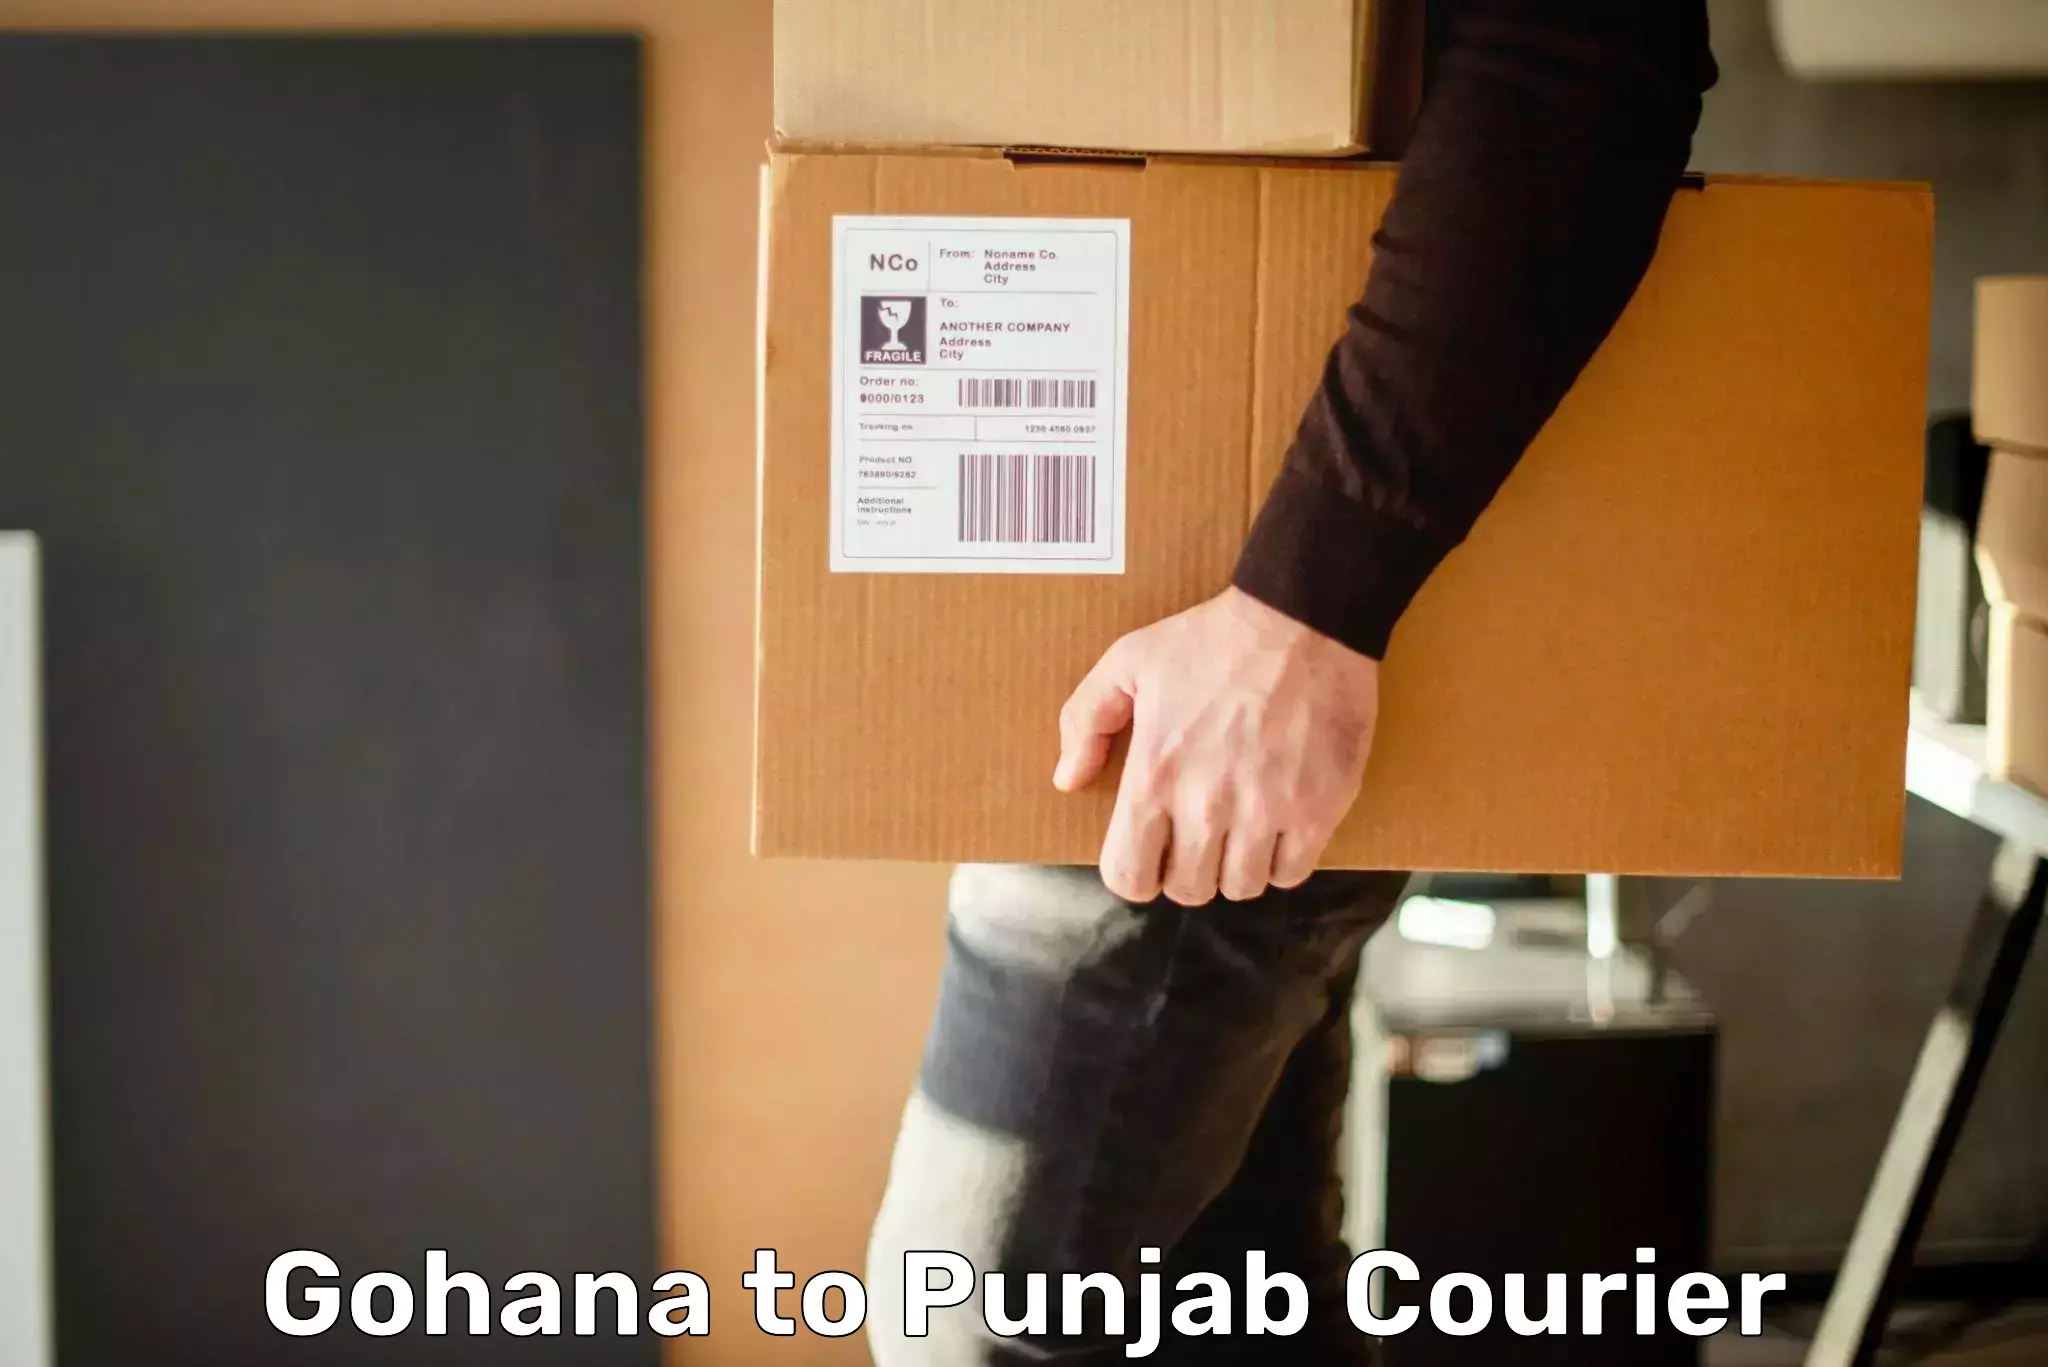 Courier service comparison Gohana to Khanna